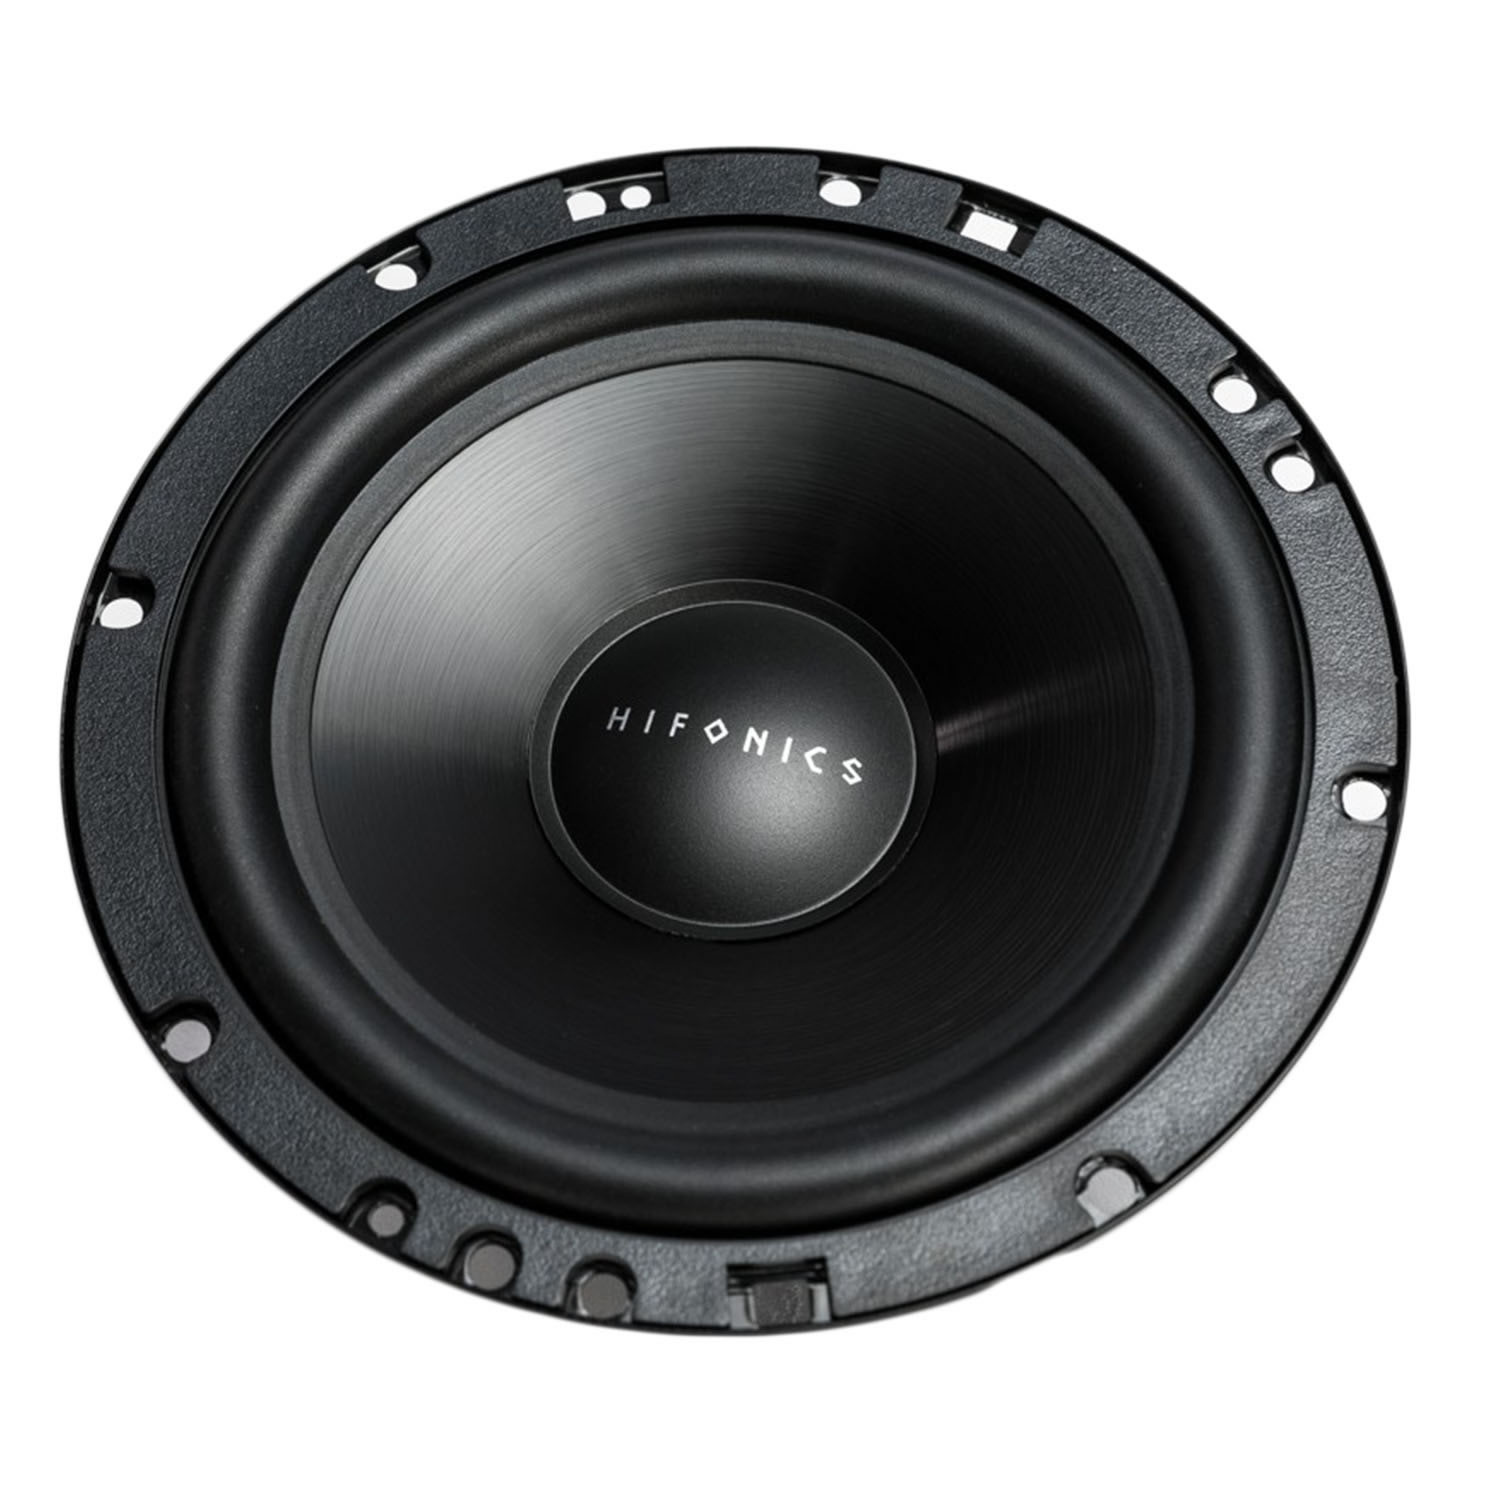 ZS65C ZEUS 6.5 Inch Speaker System | Hifonics